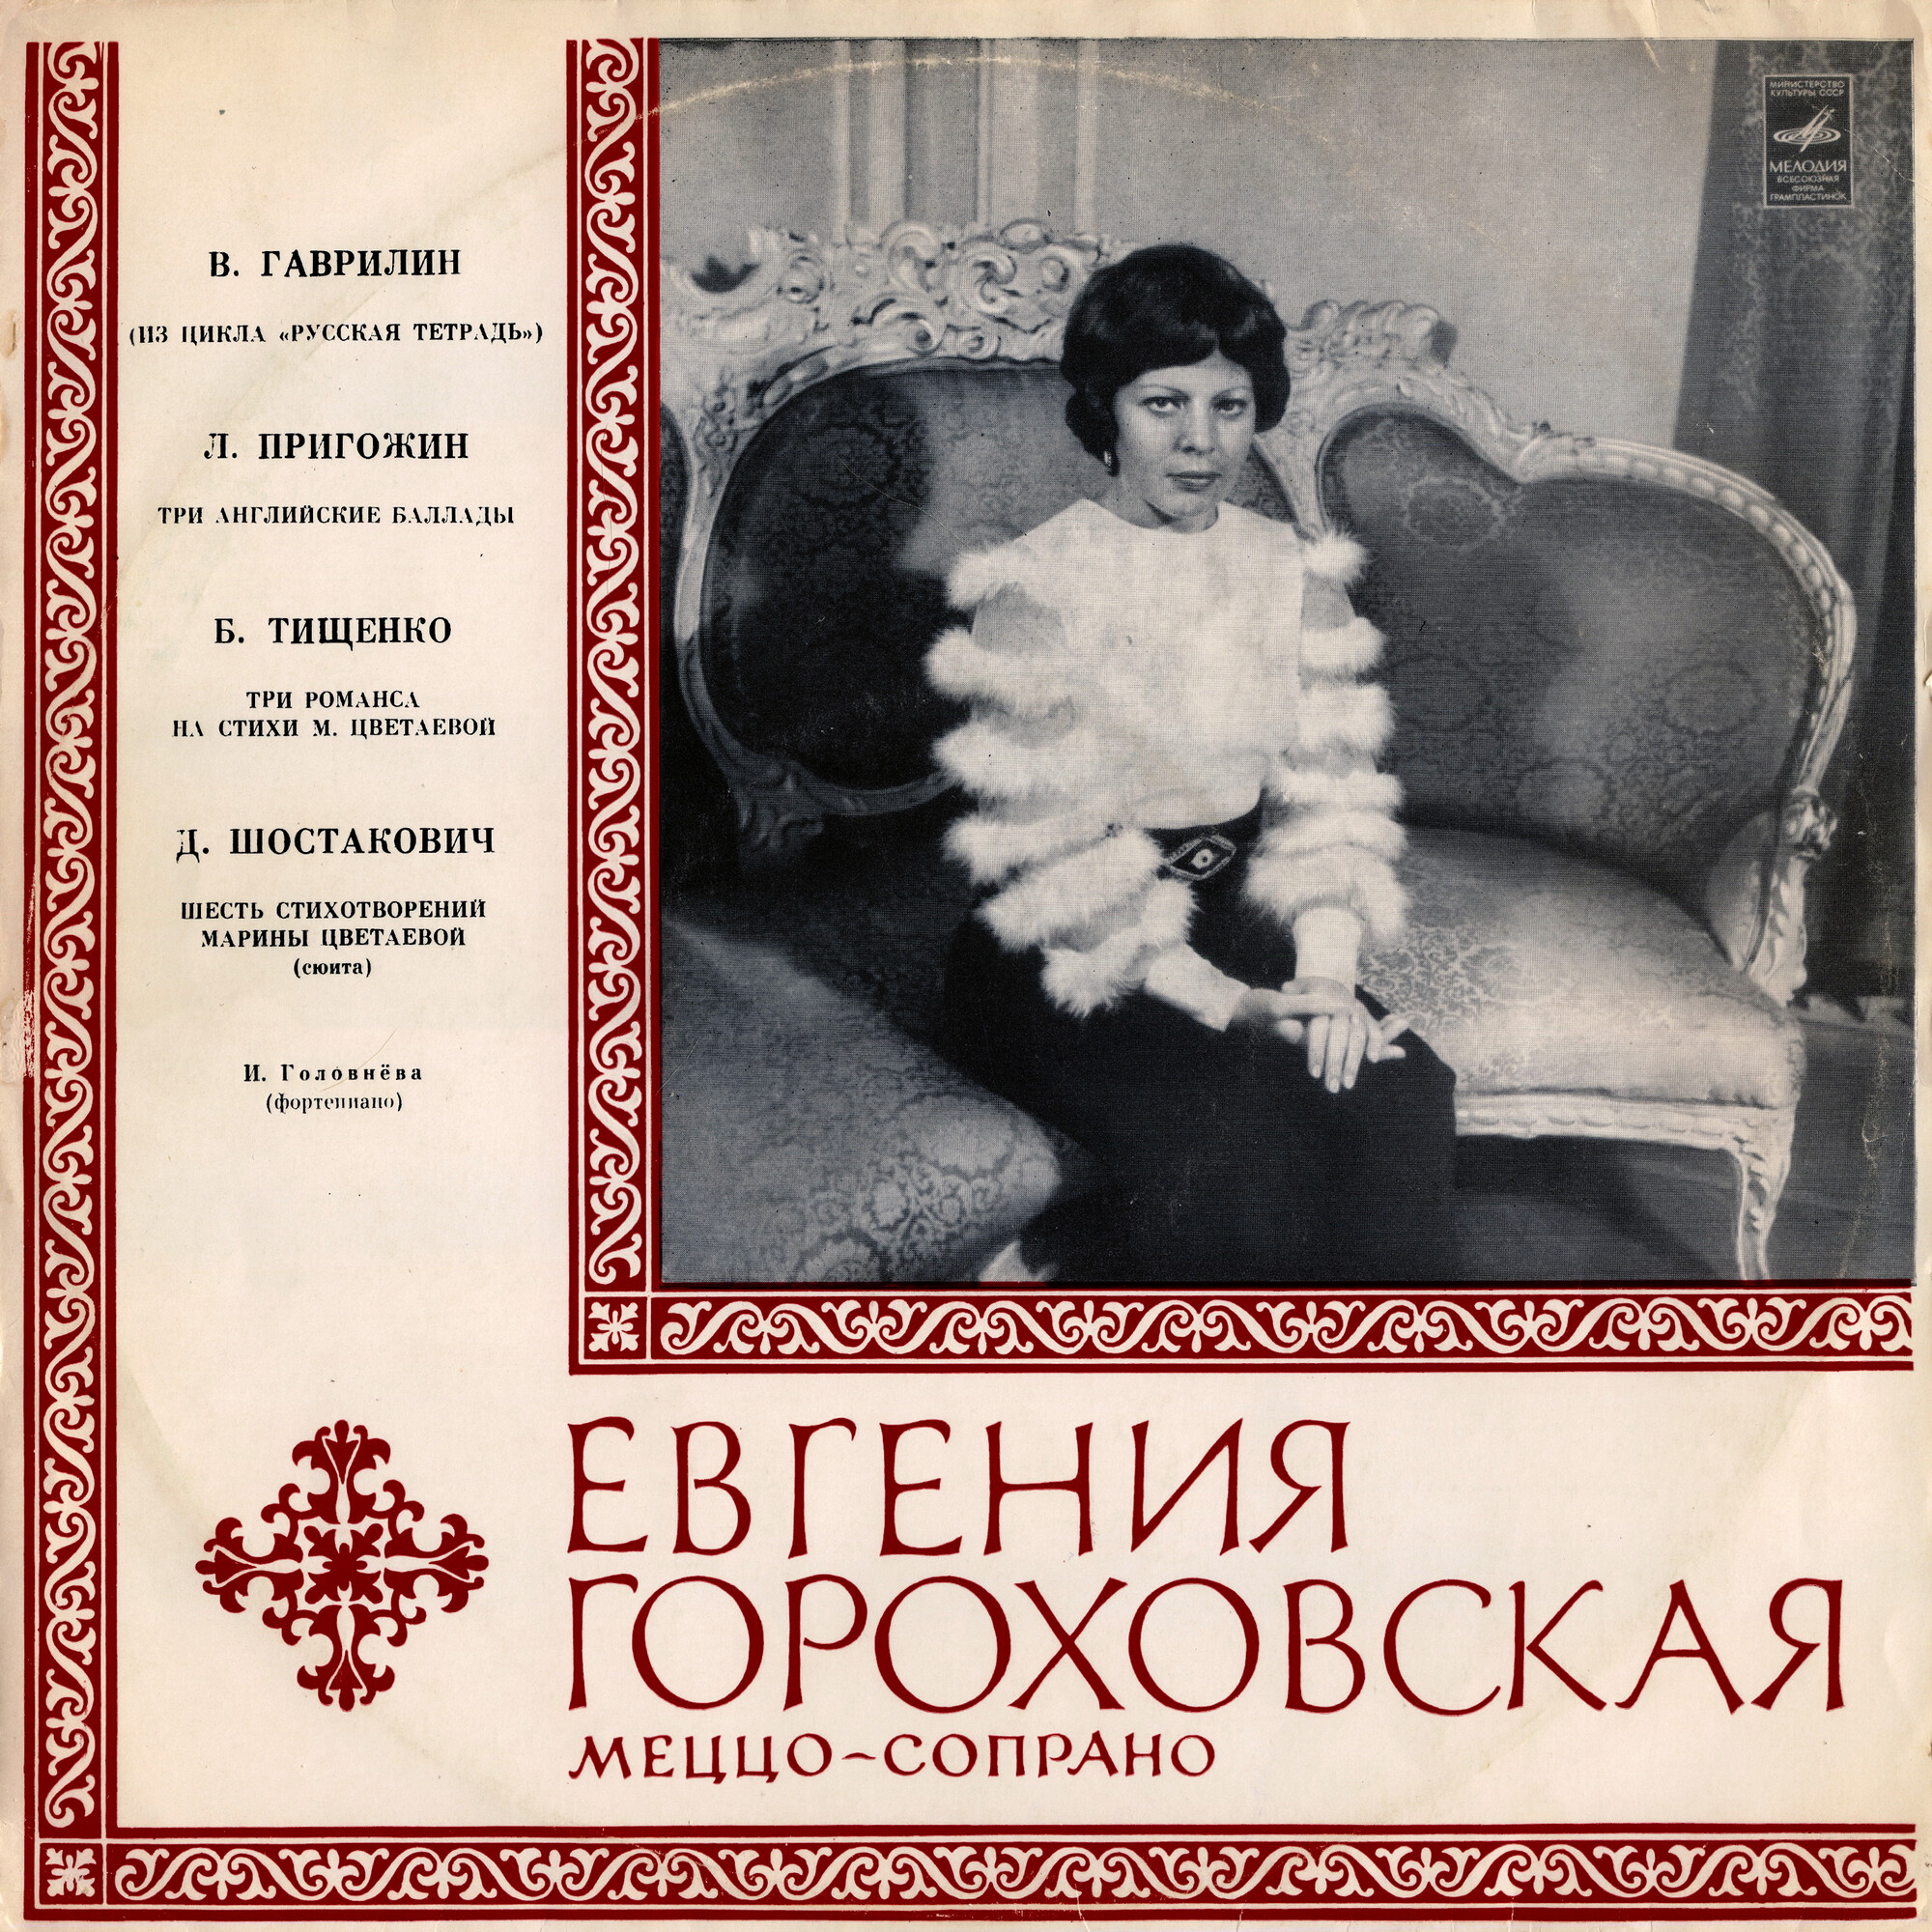 Евгения Гороховская, меццо-сопрано